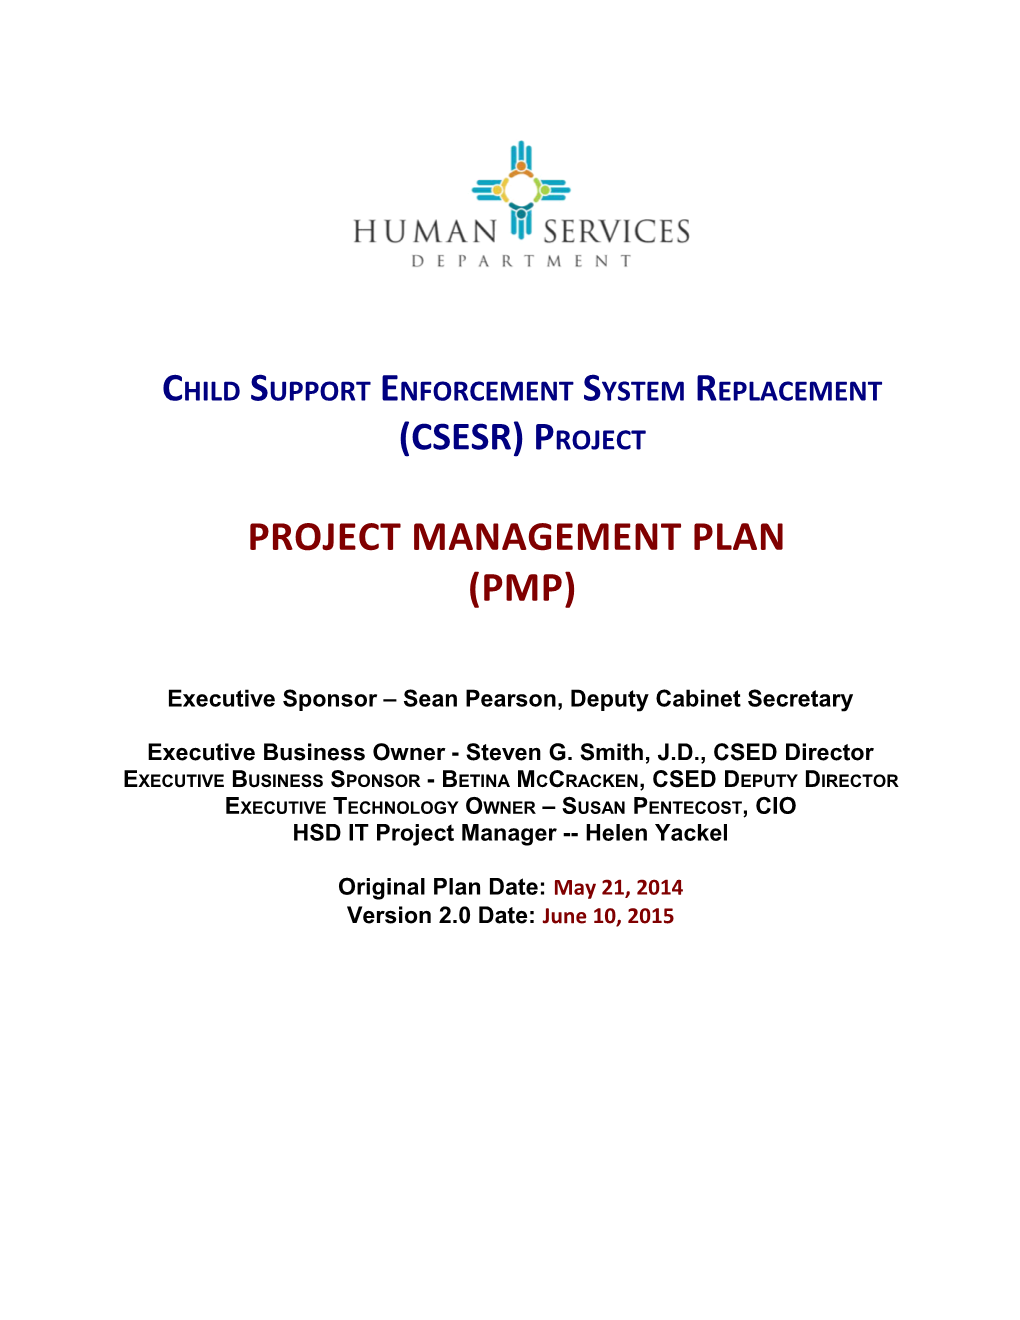 CSESR Project Management Plan